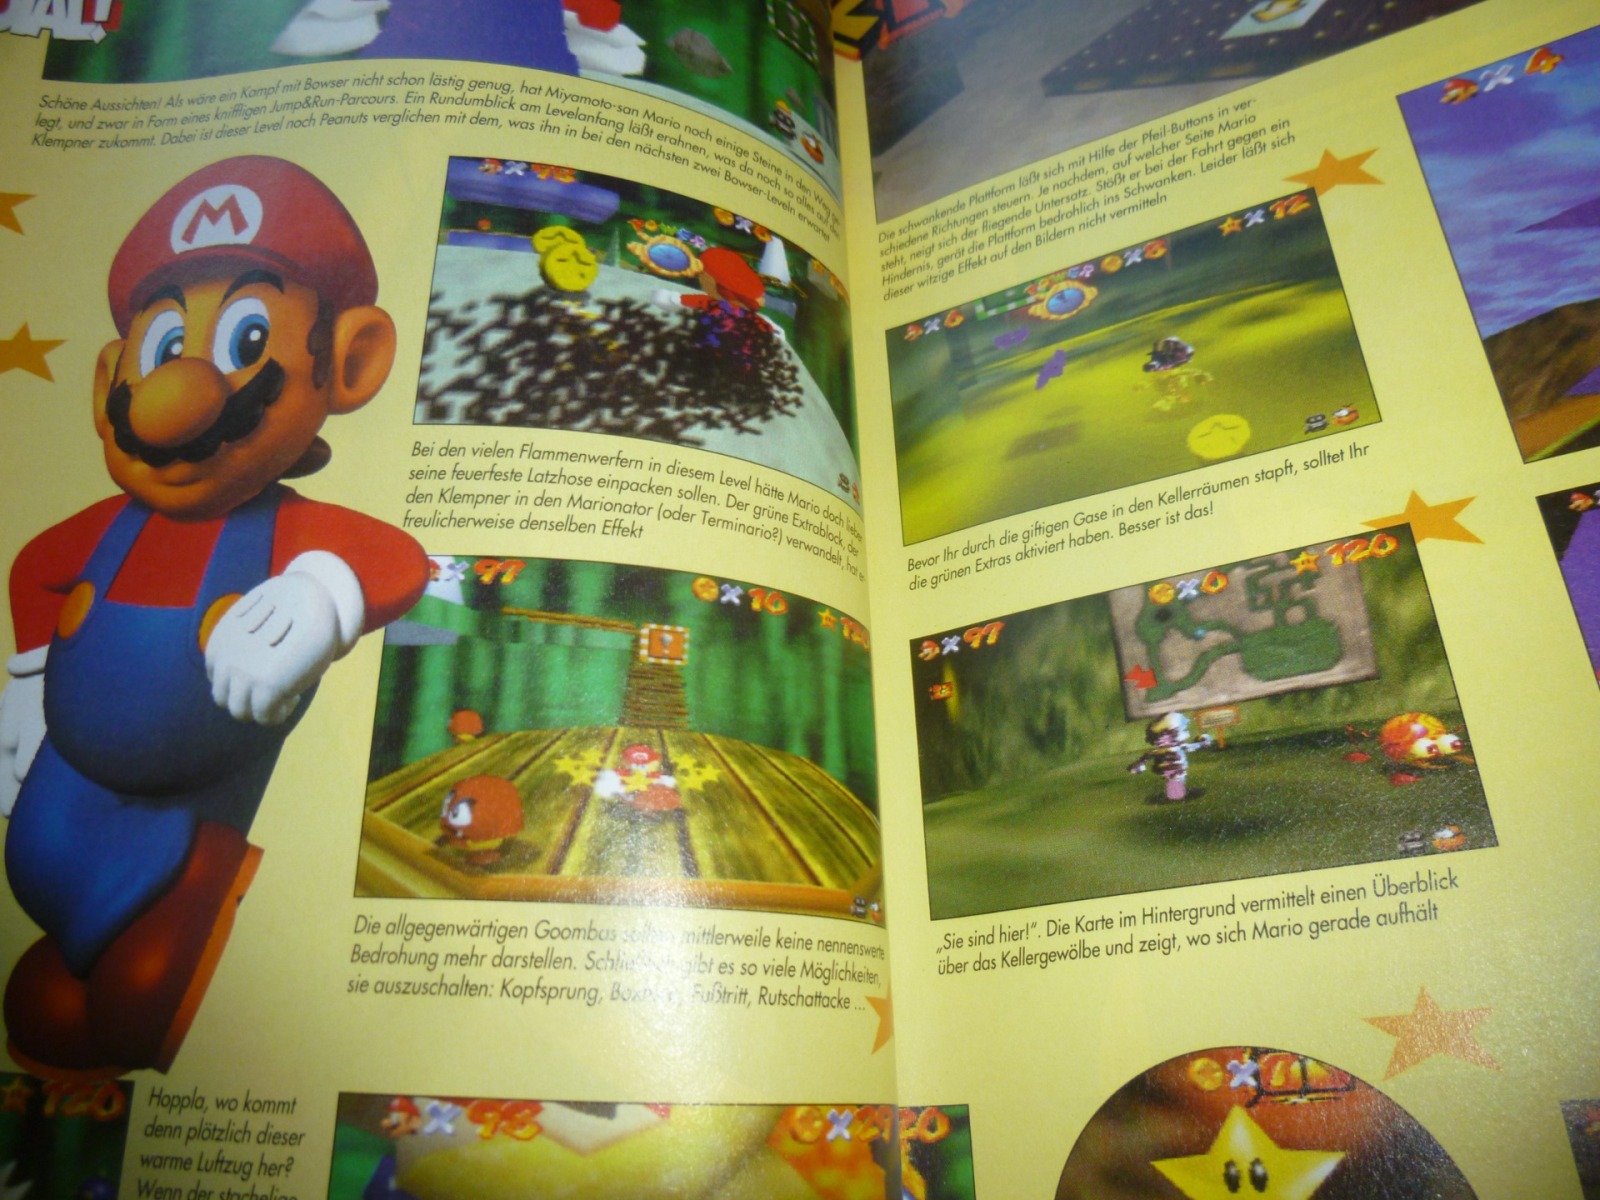 TOTAL Das unabhängige Magazin - 100 Nintendo - Ausgabe 10/96 1996 10